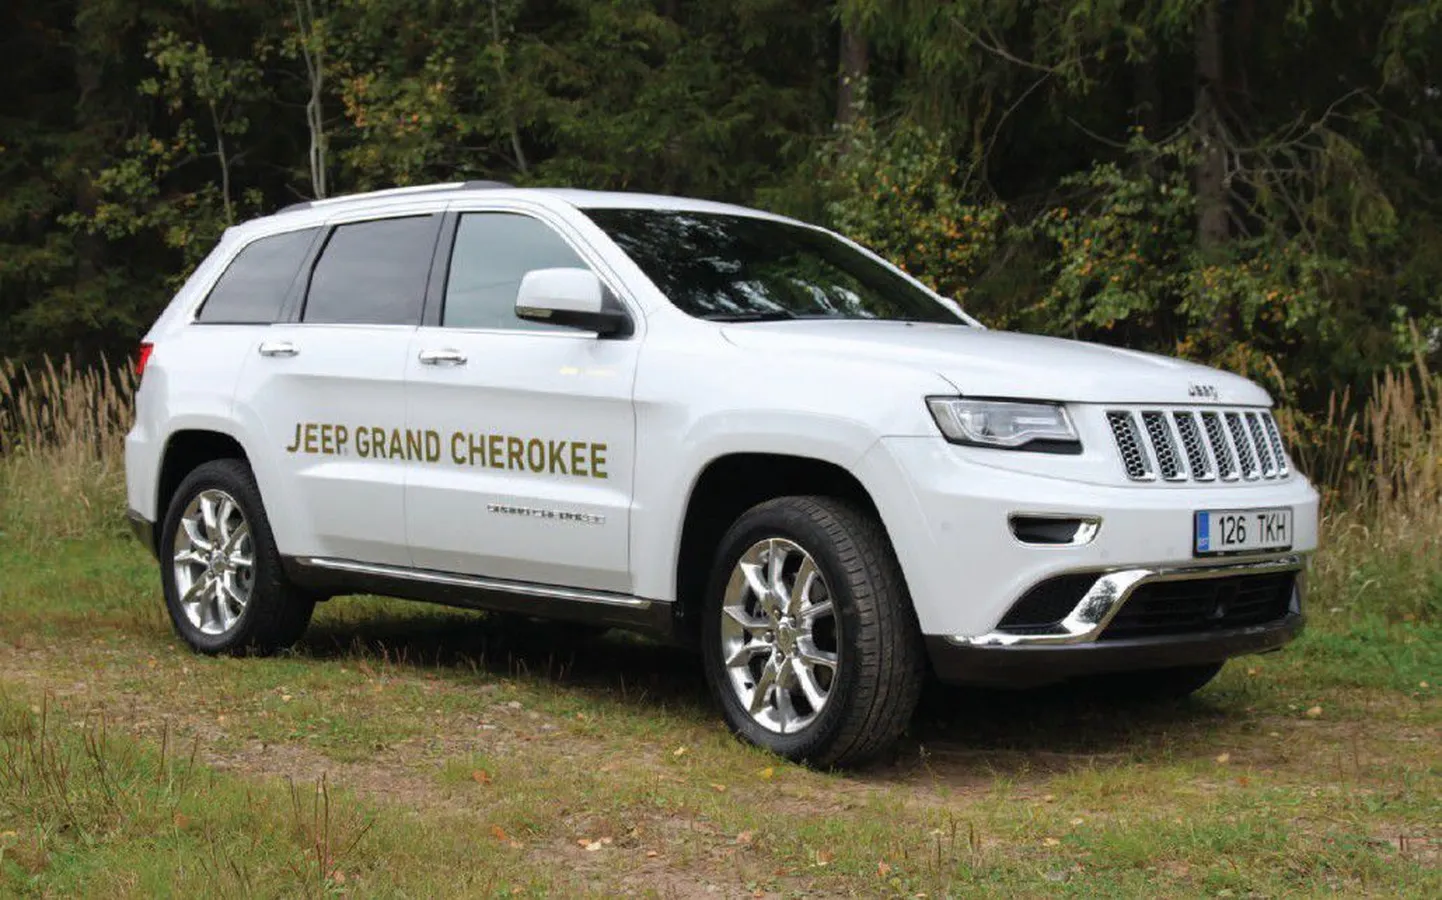 Jeep Grand Cherokee saab hakkama nii maanteel kui raskemates oludes. Võimalikke sõidurežiime on kuus: lume-, liiva-, muda-, kivide-, sport- või automaatseadistus.